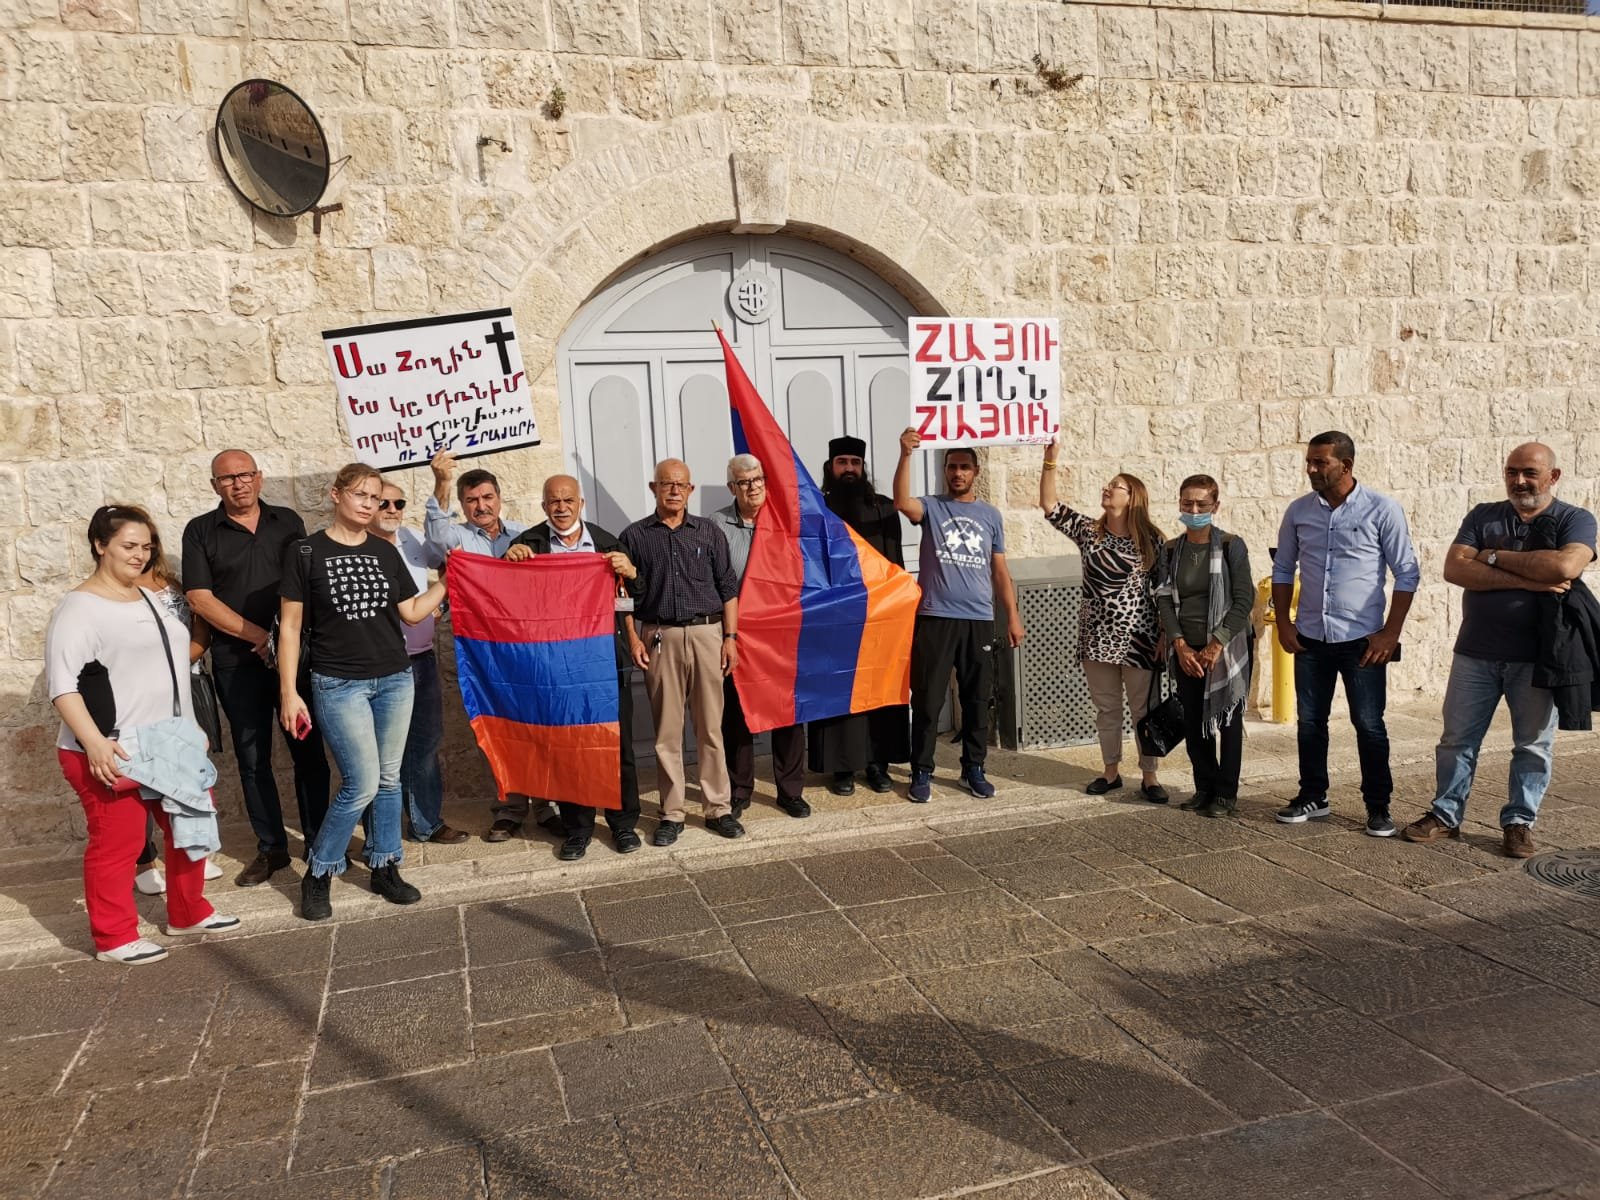 وقفة احتجاجية تطالب بإلغاء تأجير قطعة ارض تابعة للأرمن لبلدية القدس-0